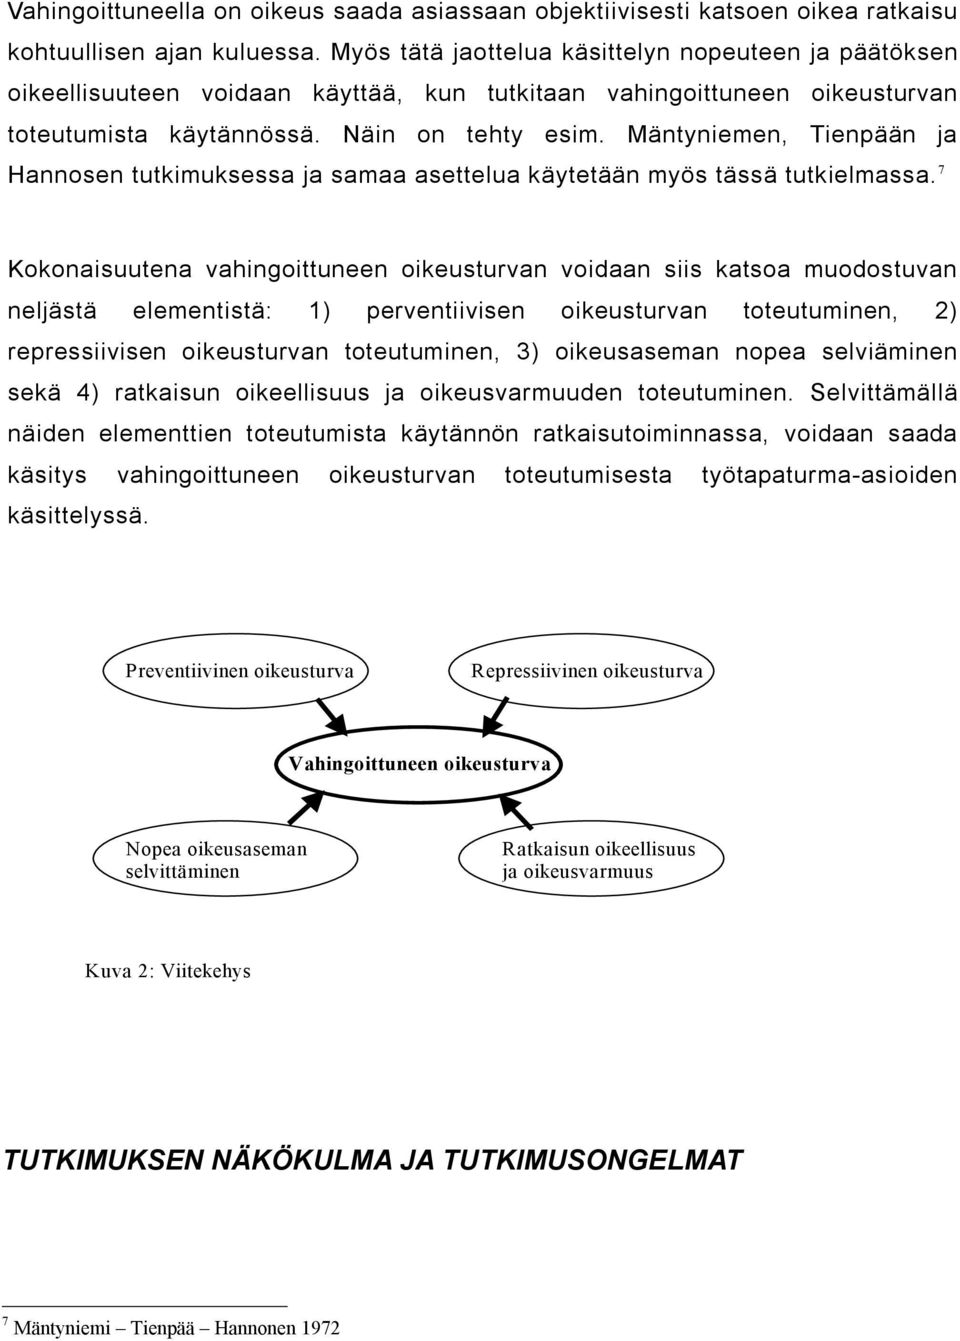 Mäntyniemen, Tienpään ja Hannosen tutkimuksessa ja samaa asettelua käytetään myös tässä tutkielmassa.